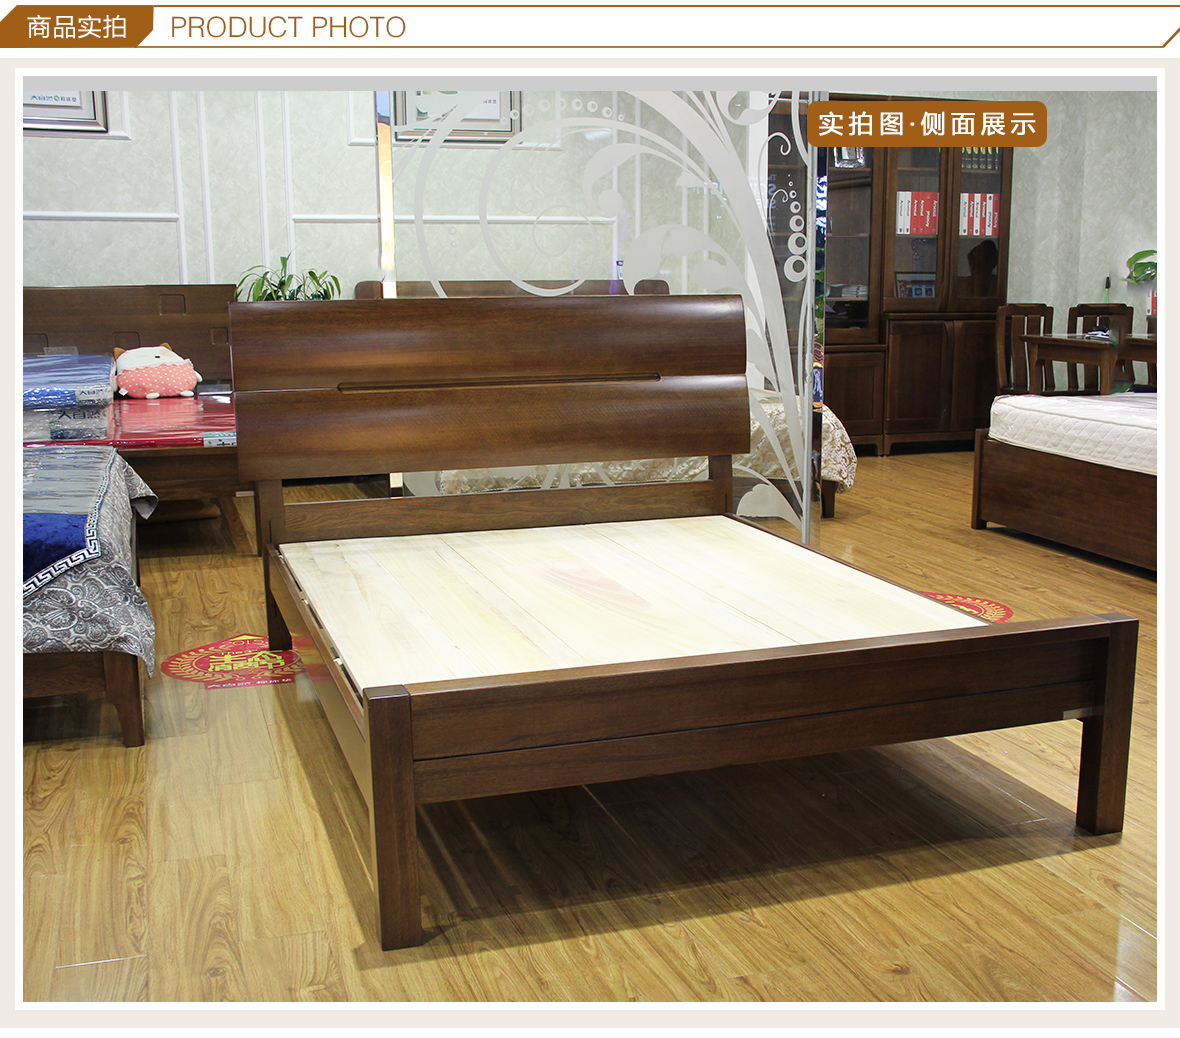 15款好看的实木床图片欣赏-中国木业网